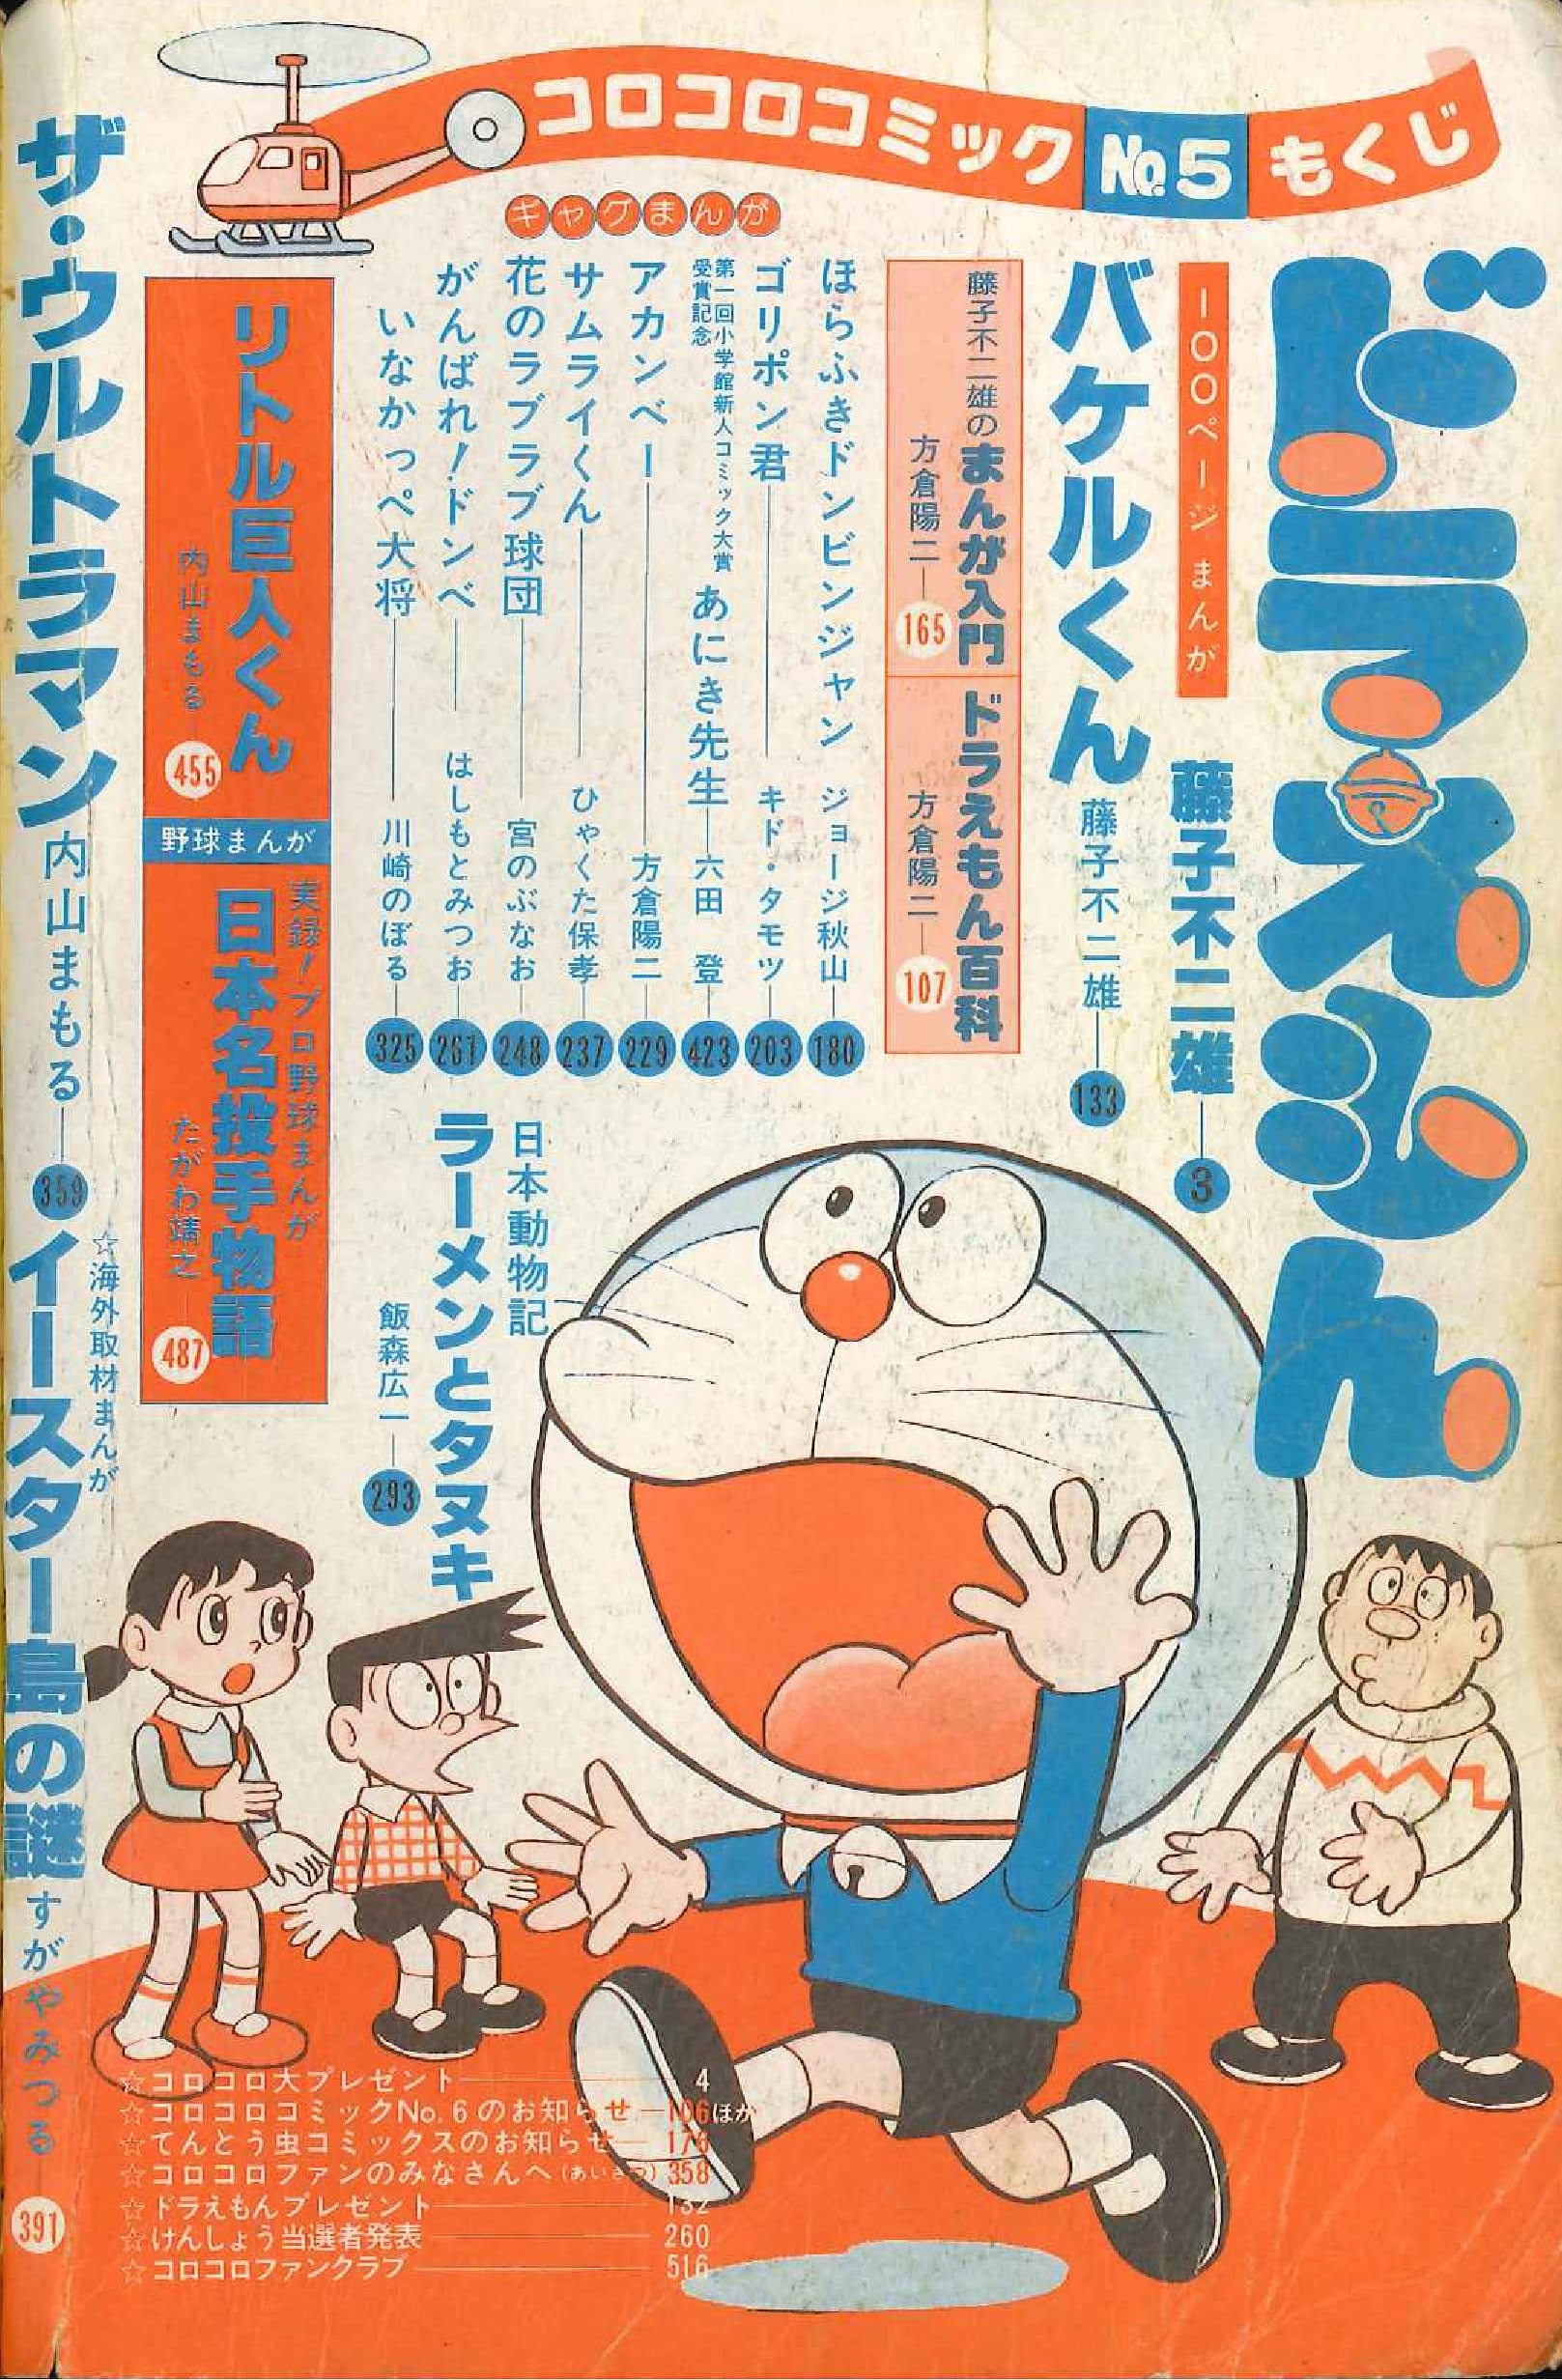 小学館 1978年 昭和53年 の漫画雑誌 コロコロコミック 1978年 昭和53年 03 月号 5 まんだらけ Mandarake